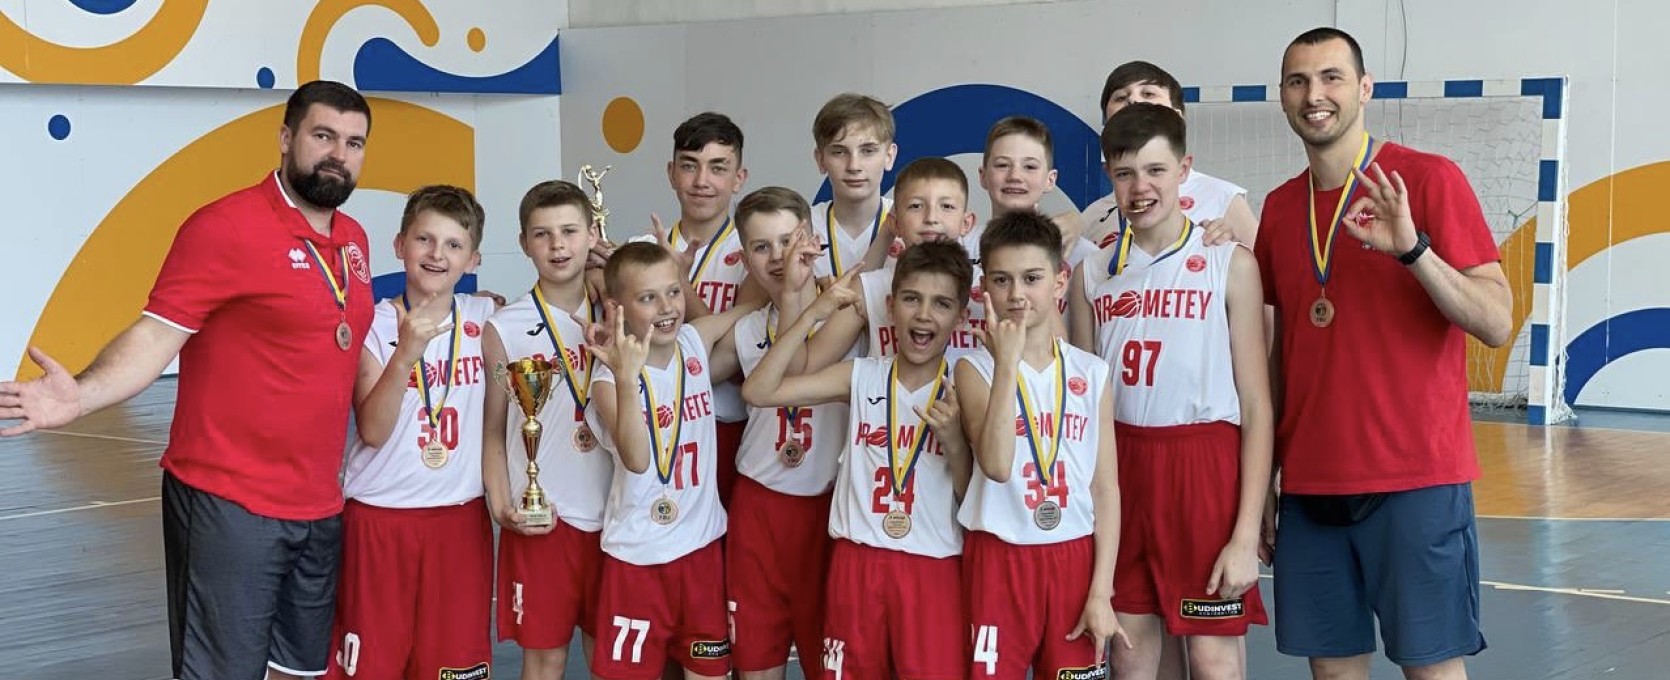 Команда Академії "Прометея" 2011 р.н. - бронзовий призер ВЮБЛ!